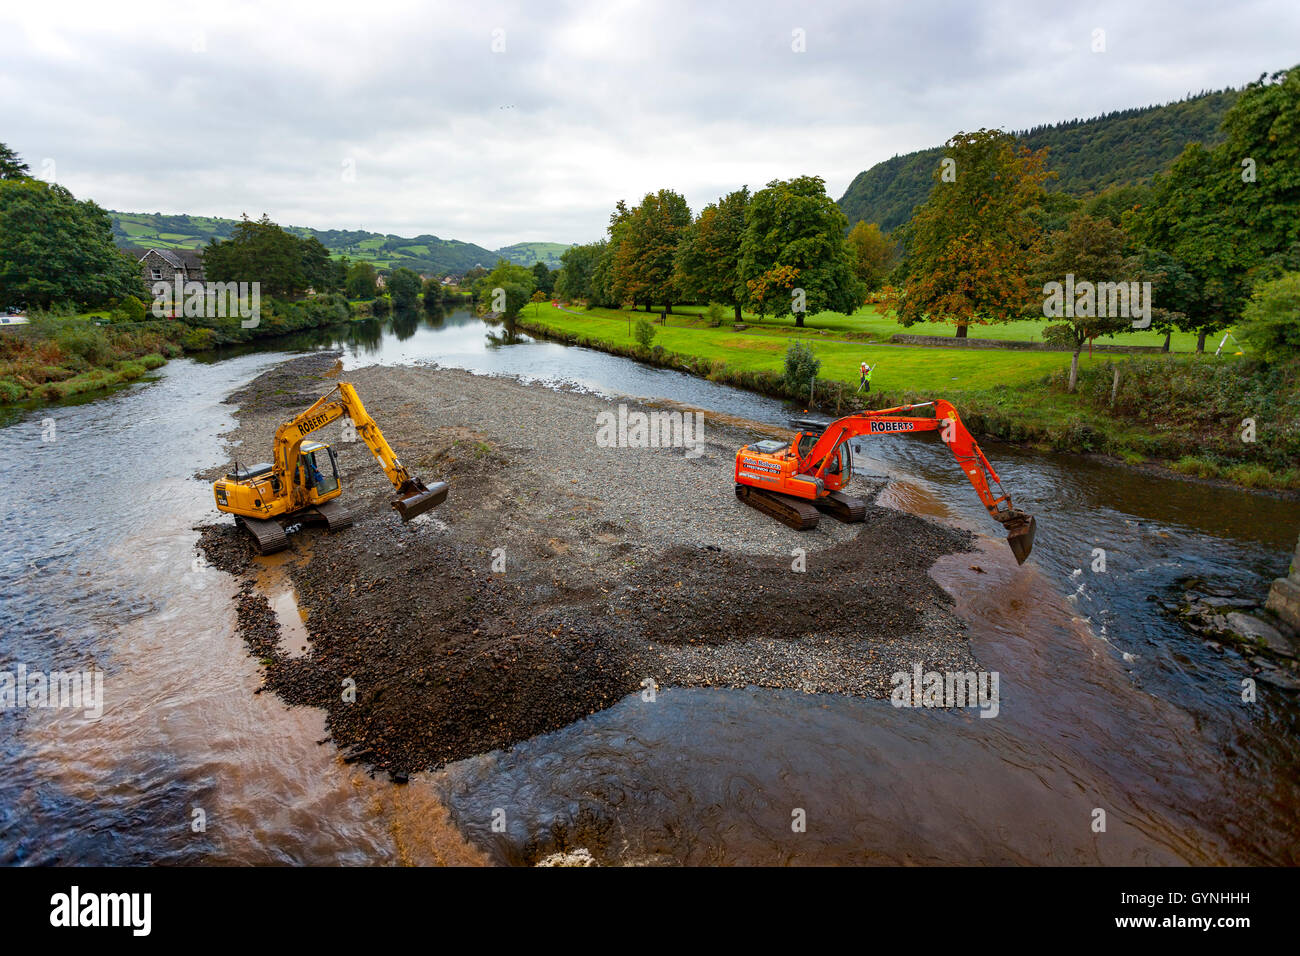 L'autorisation a été accordée et le travail commence sur le dragage de la rivière Conwy pour prévenir les inondations dans la vallée qui est notoire pour l'inondation. Diggers at work l'excavation de la rivière pour l'hiver Banque D'Images